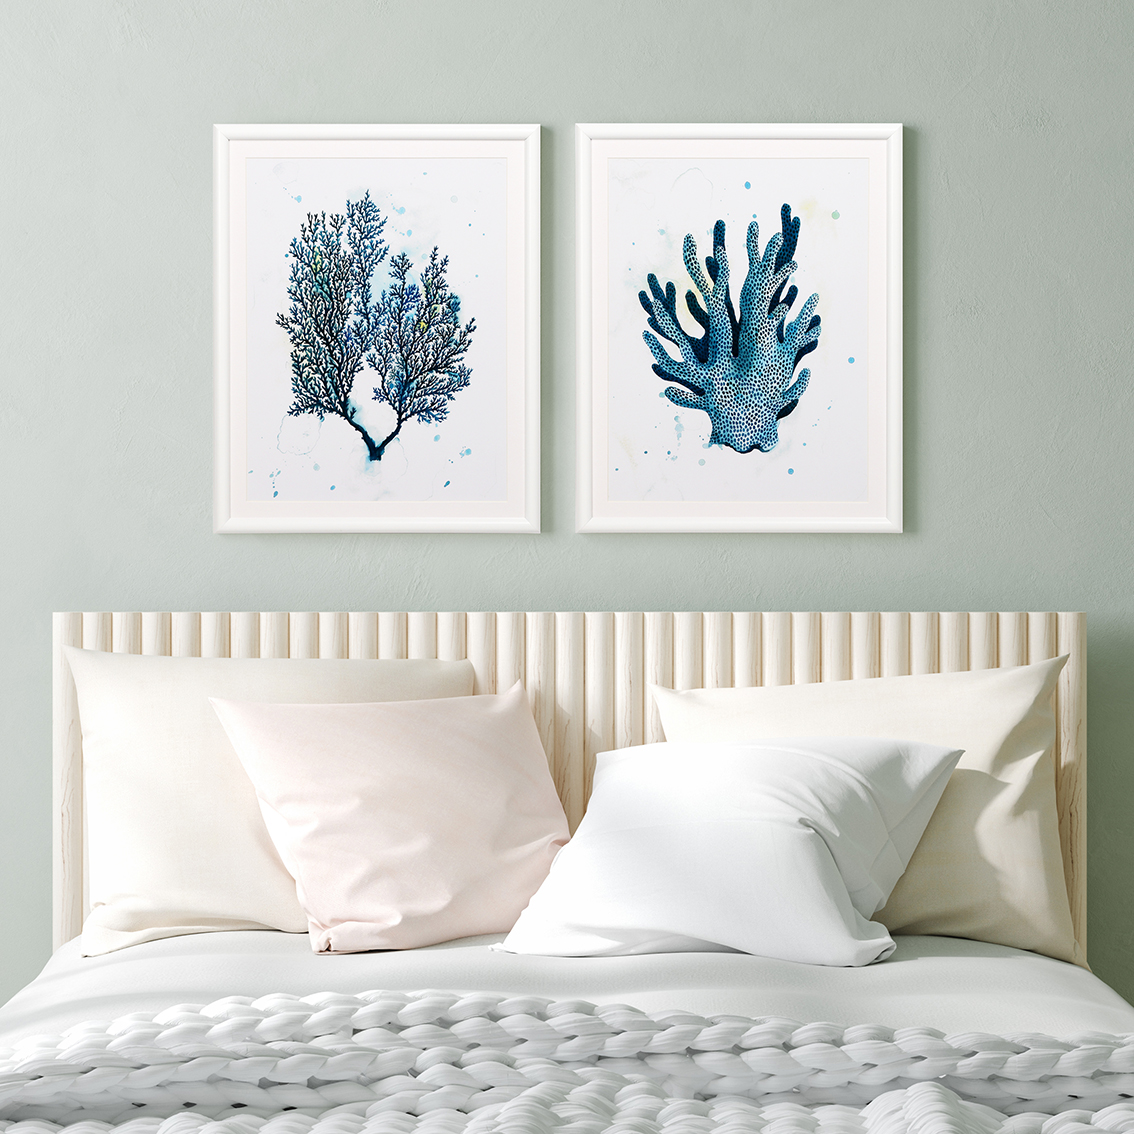 Arte de parede de plantas marinhas azuis em aquarela emolduradas